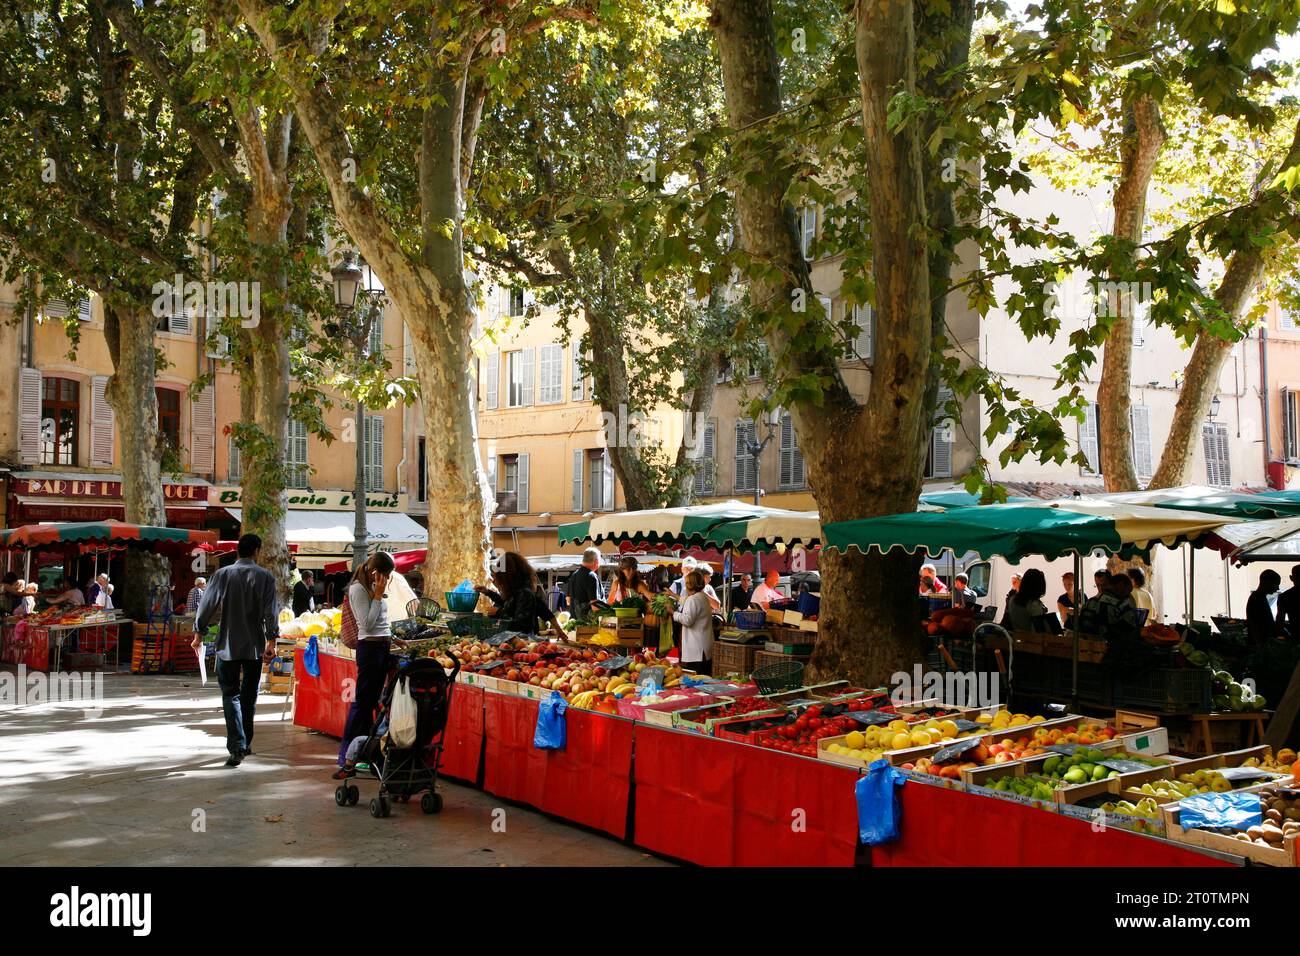 Markt am Ort Richelme in Vieil Aix der Altstadt von Aix-En-Provence, Bouches-du-Rhône, Provence, Frankreich. Stockfoto